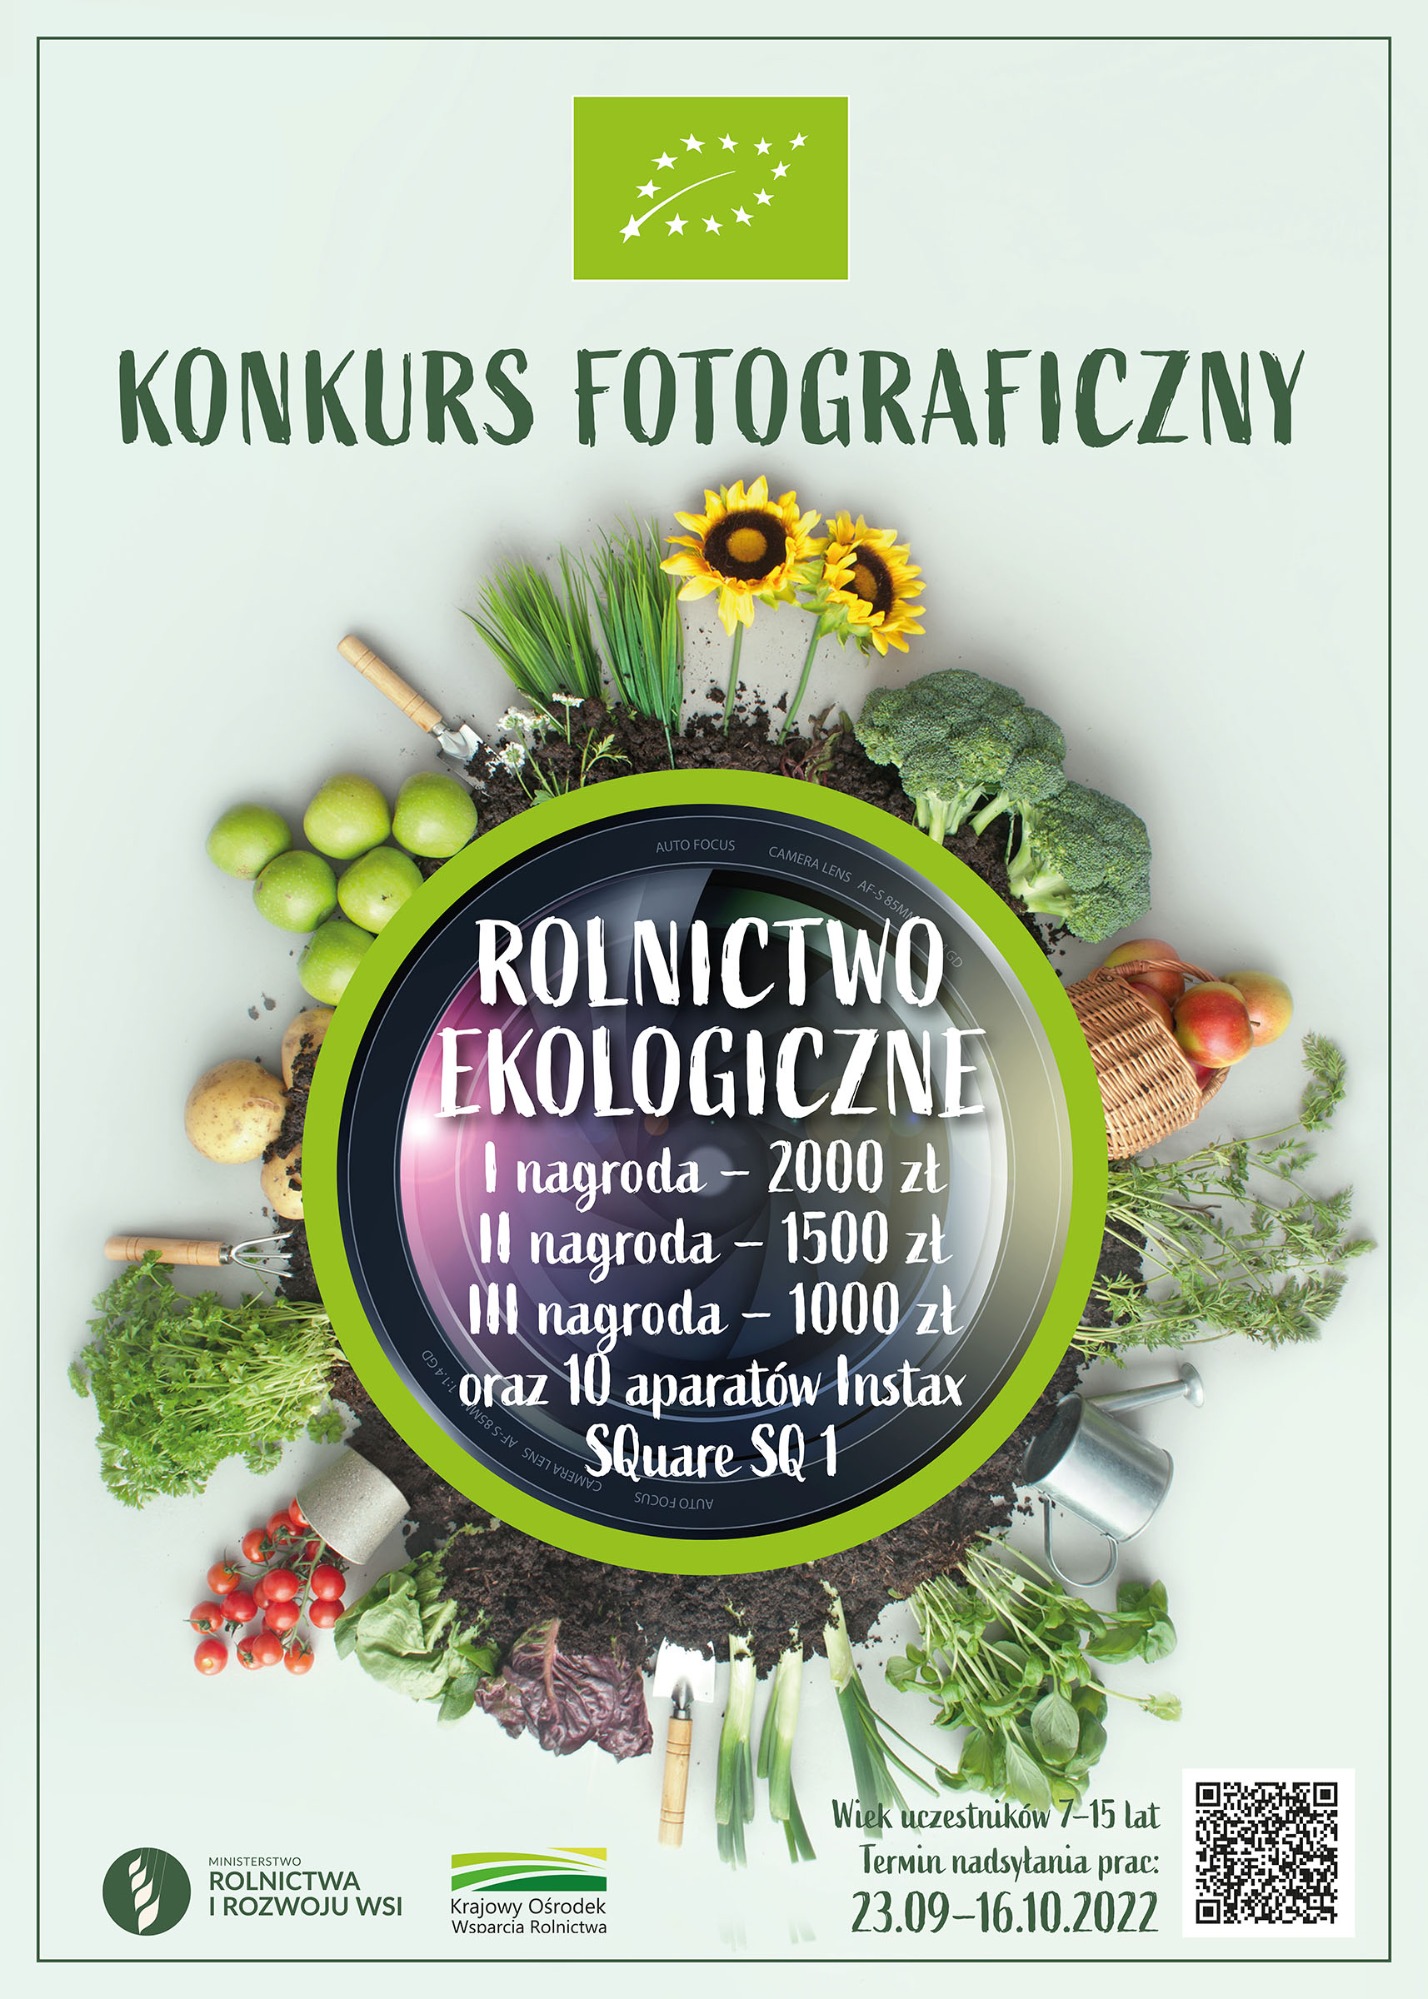 Rolnictwo Ekologiczna - konkurs fotograficzny  - Obrazek 1